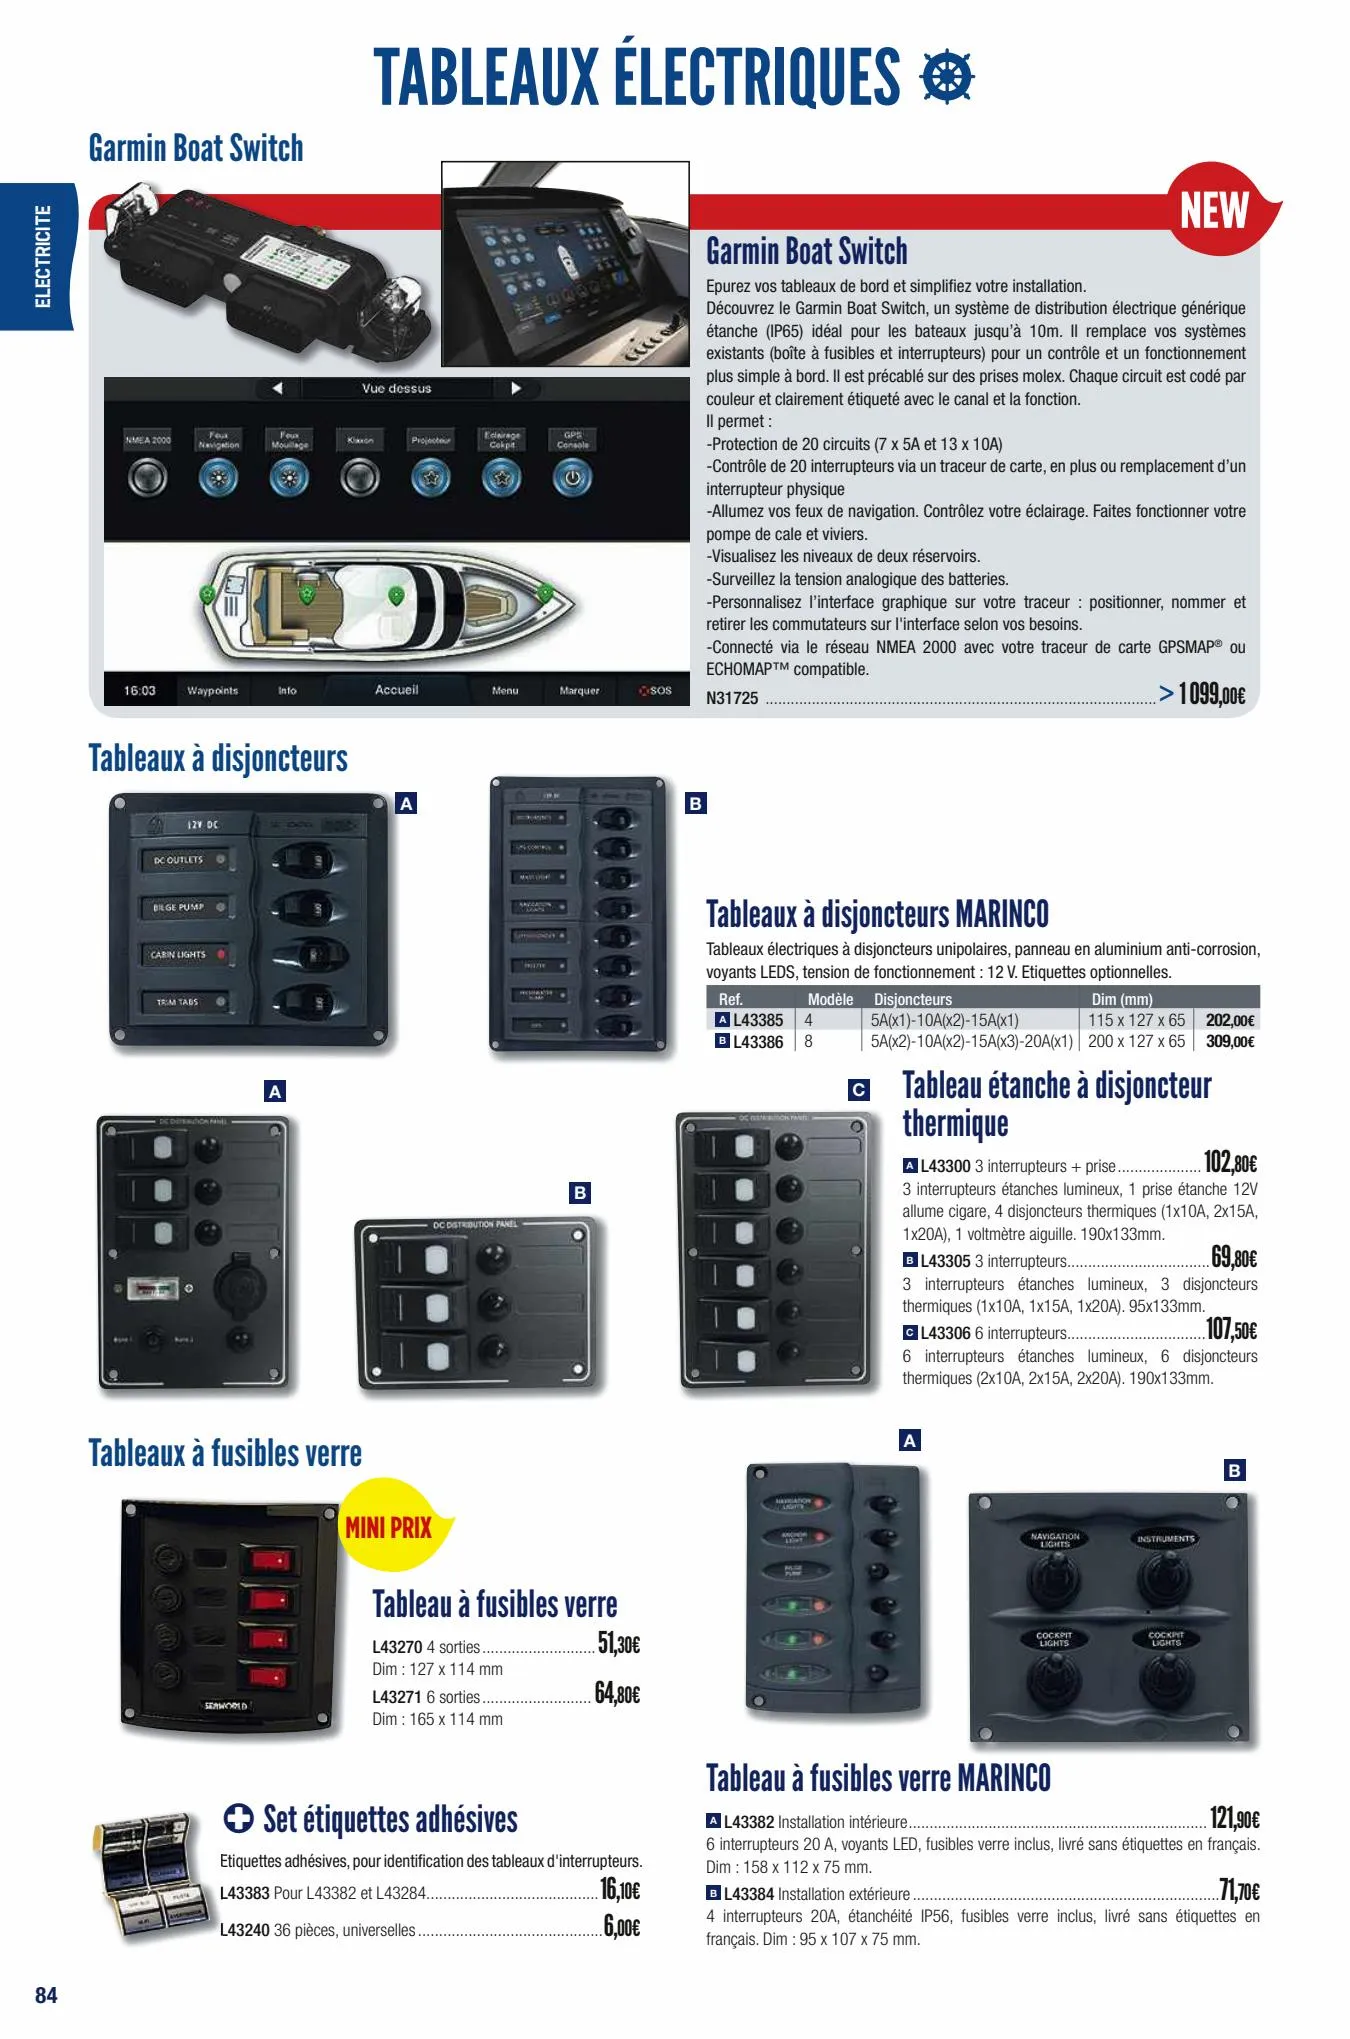 Interrupteurs 12V - Prises et interrupteurs 12V sur Accastillage Diffusion